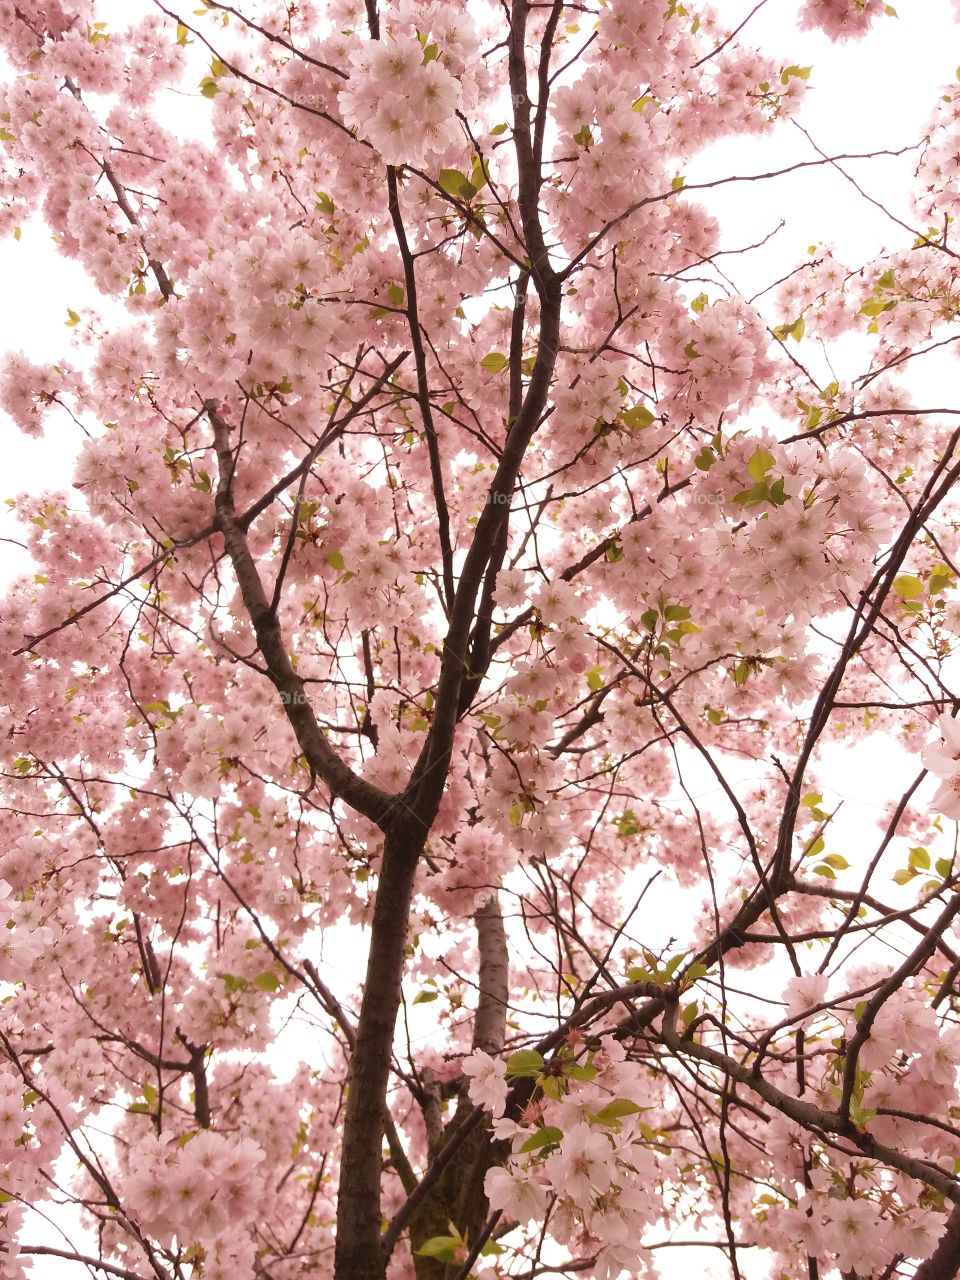 Sakura sakura